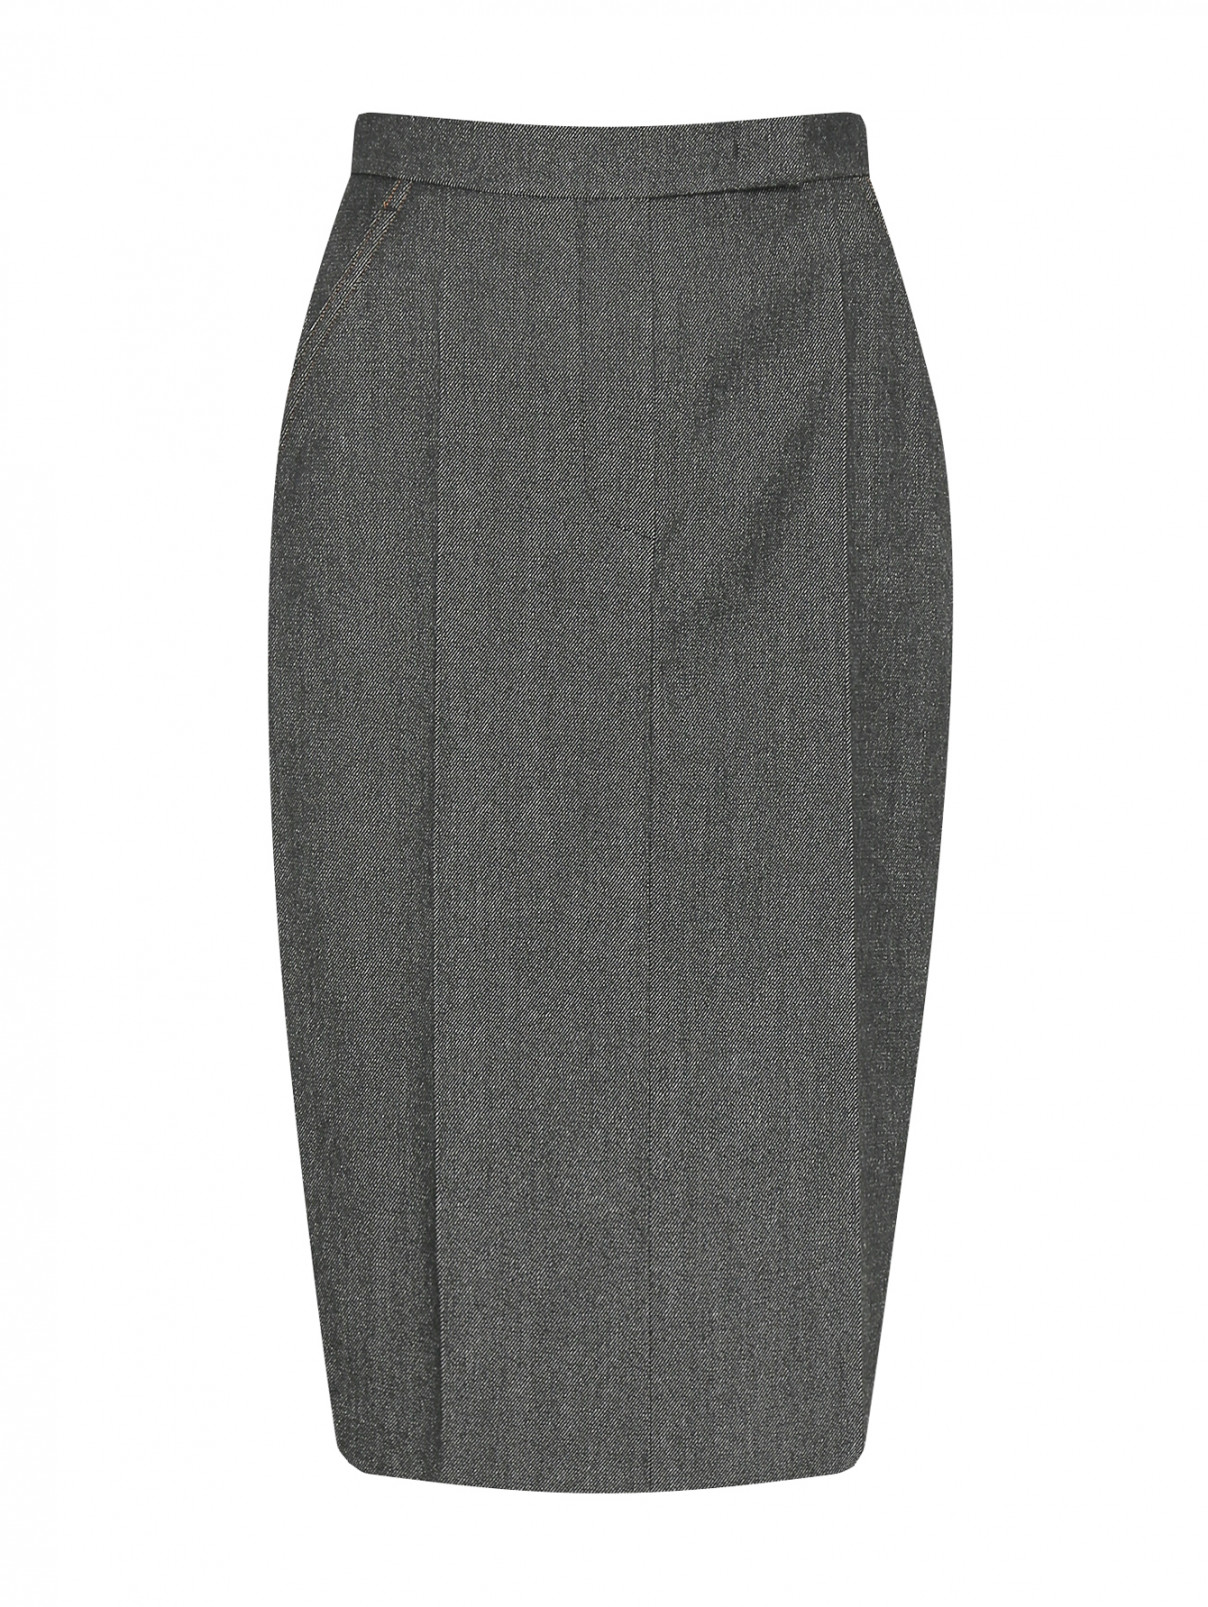 Юбка из шерсти с карманами Max Mara  –  Общий вид  – Цвет:  Серый